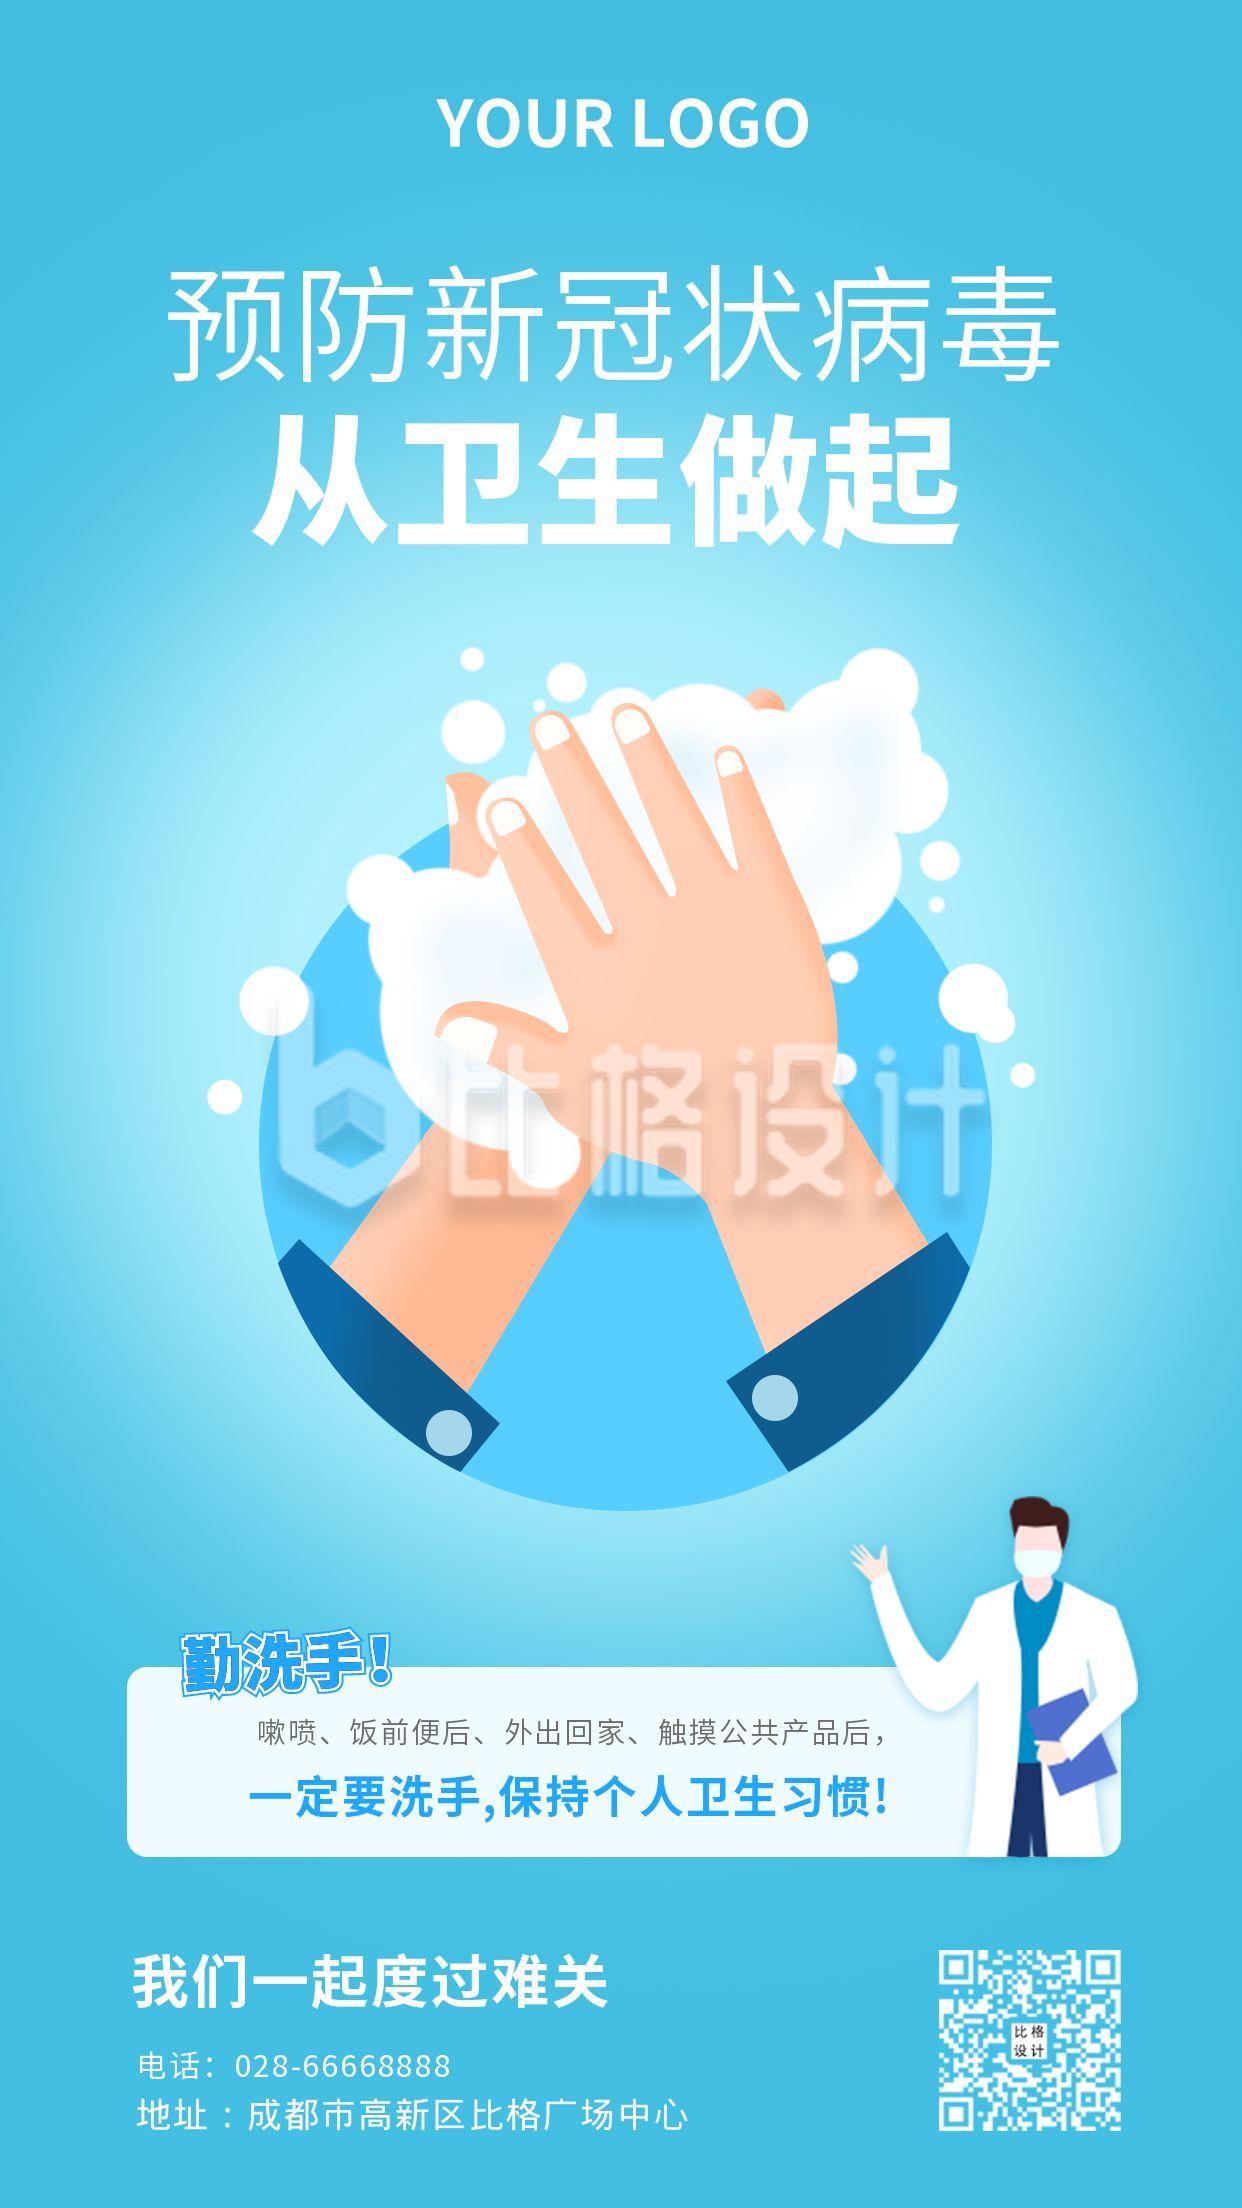 疫情防护防控勤洗手科普健康通知宣传手机海报